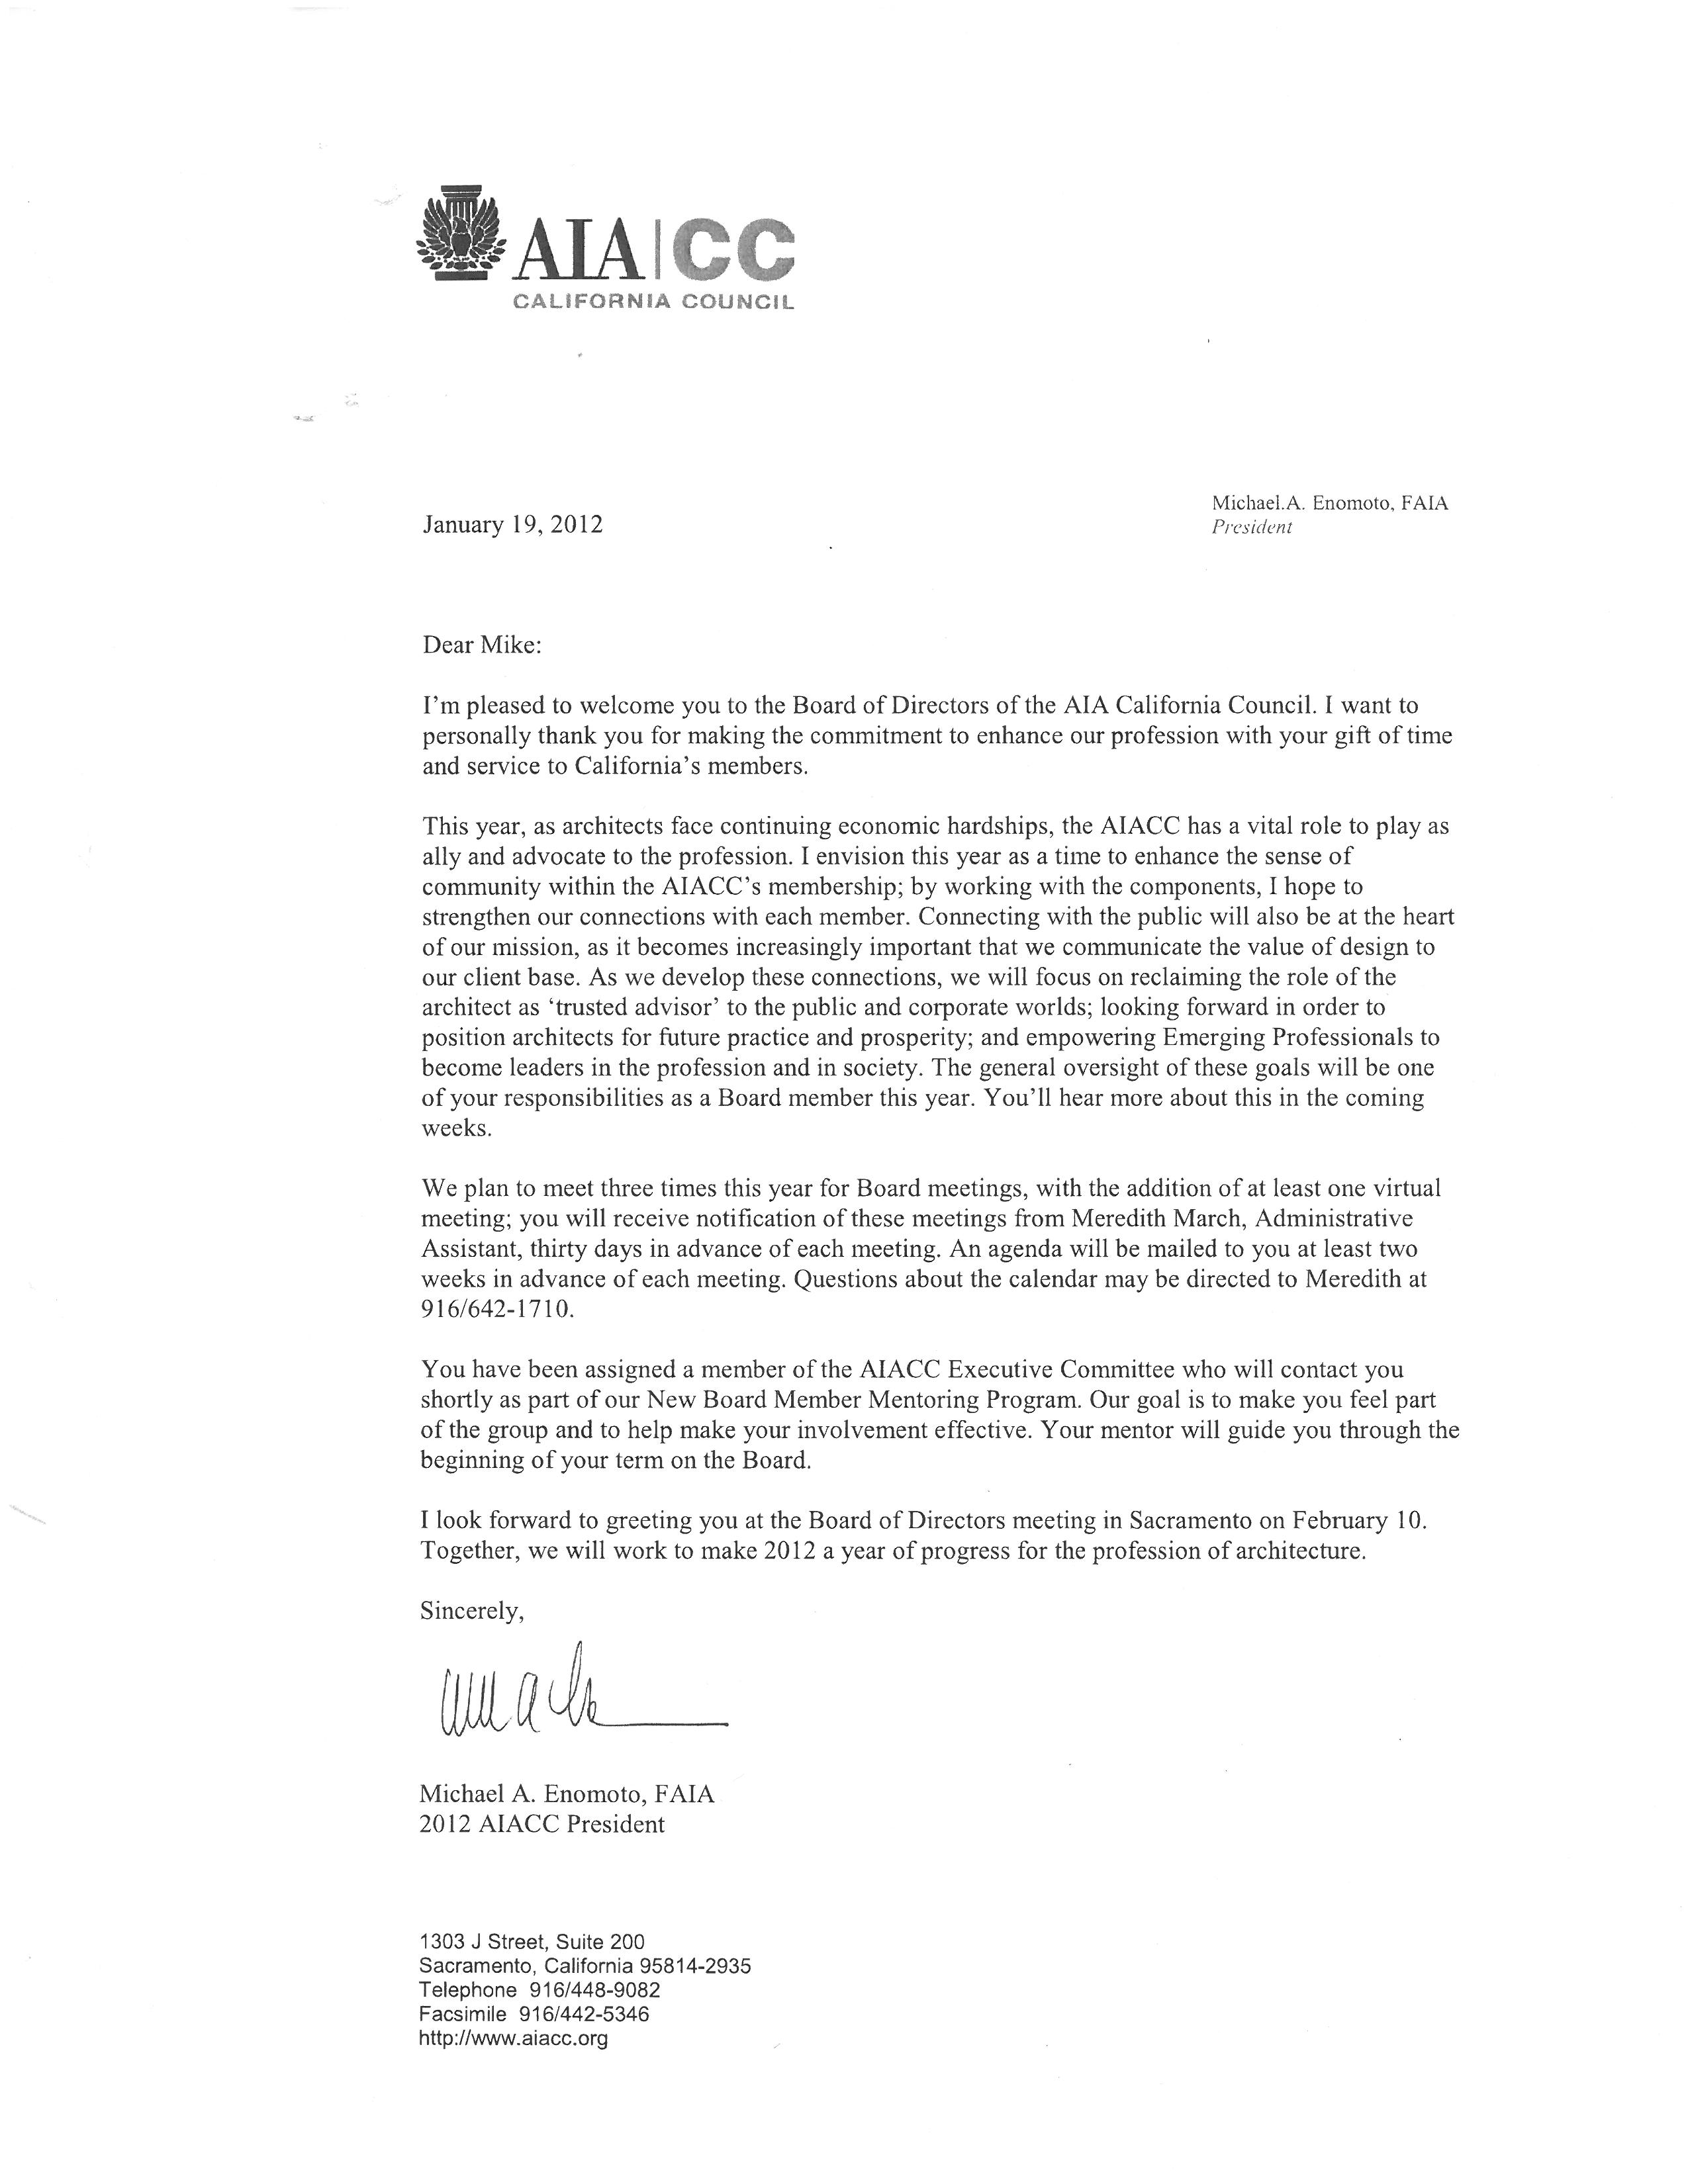 AIA CC Board of Directors Letter